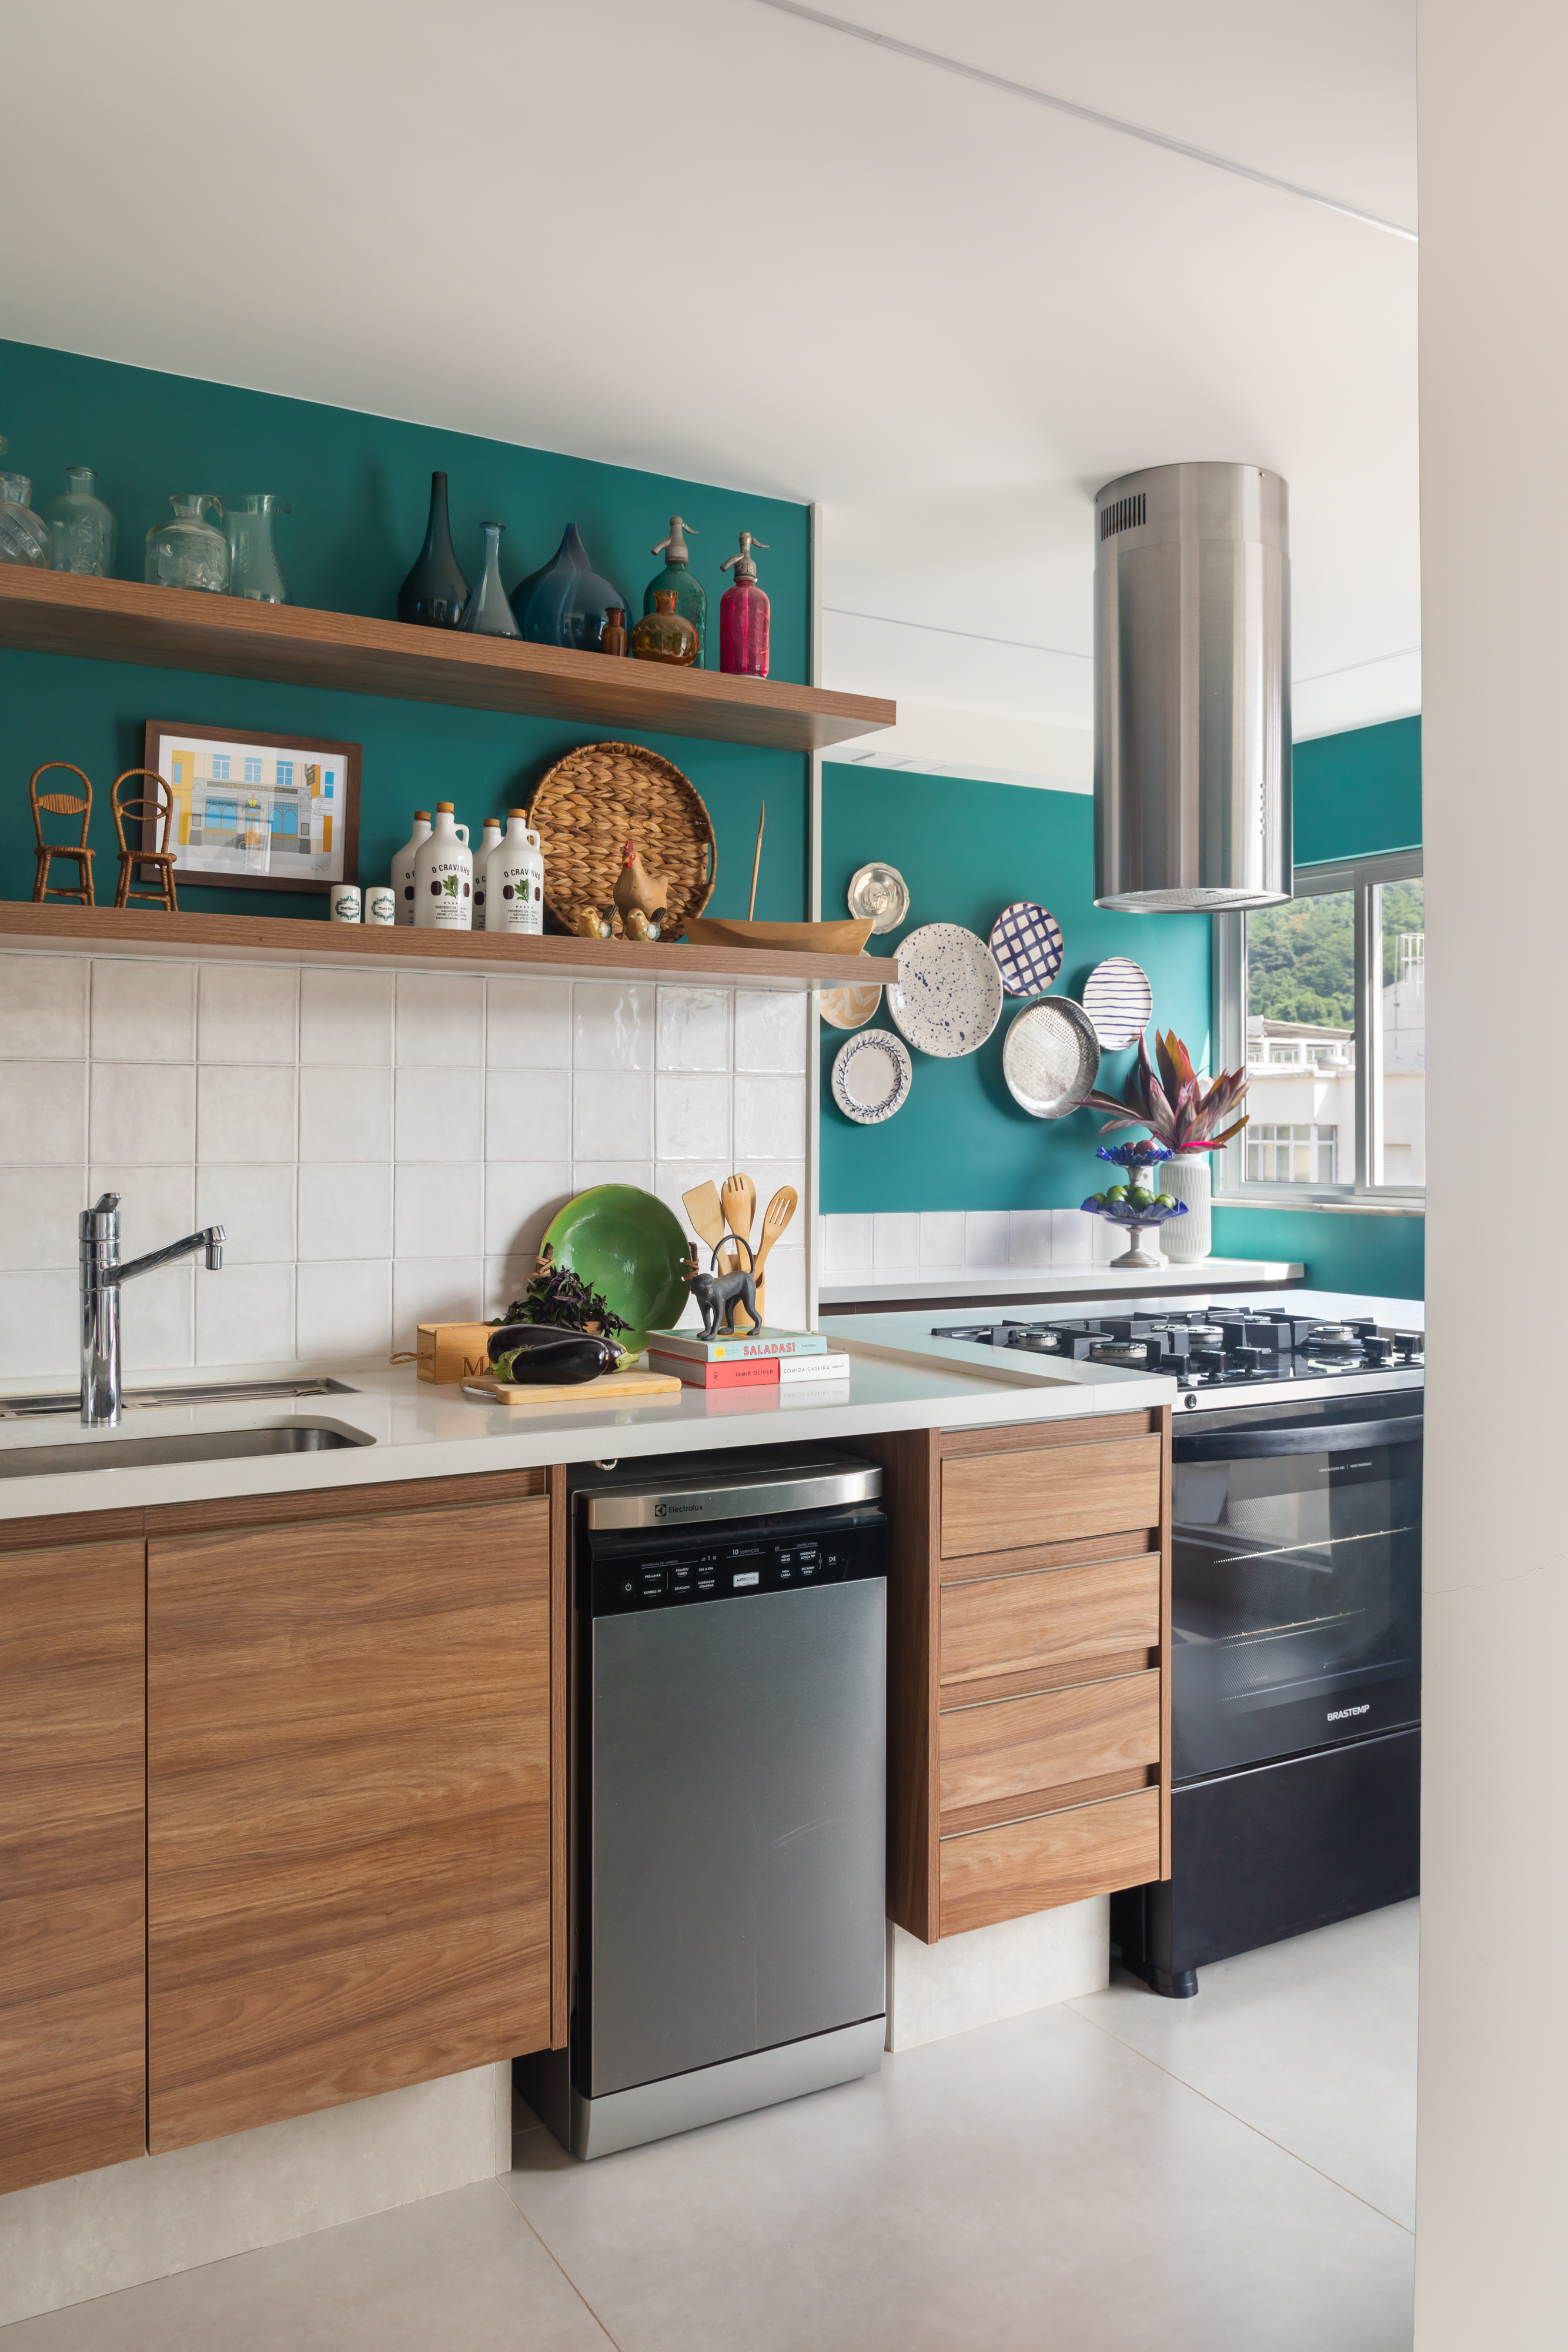 Cozinha com parede verde, backsplash de azulejos brancos e coifa.